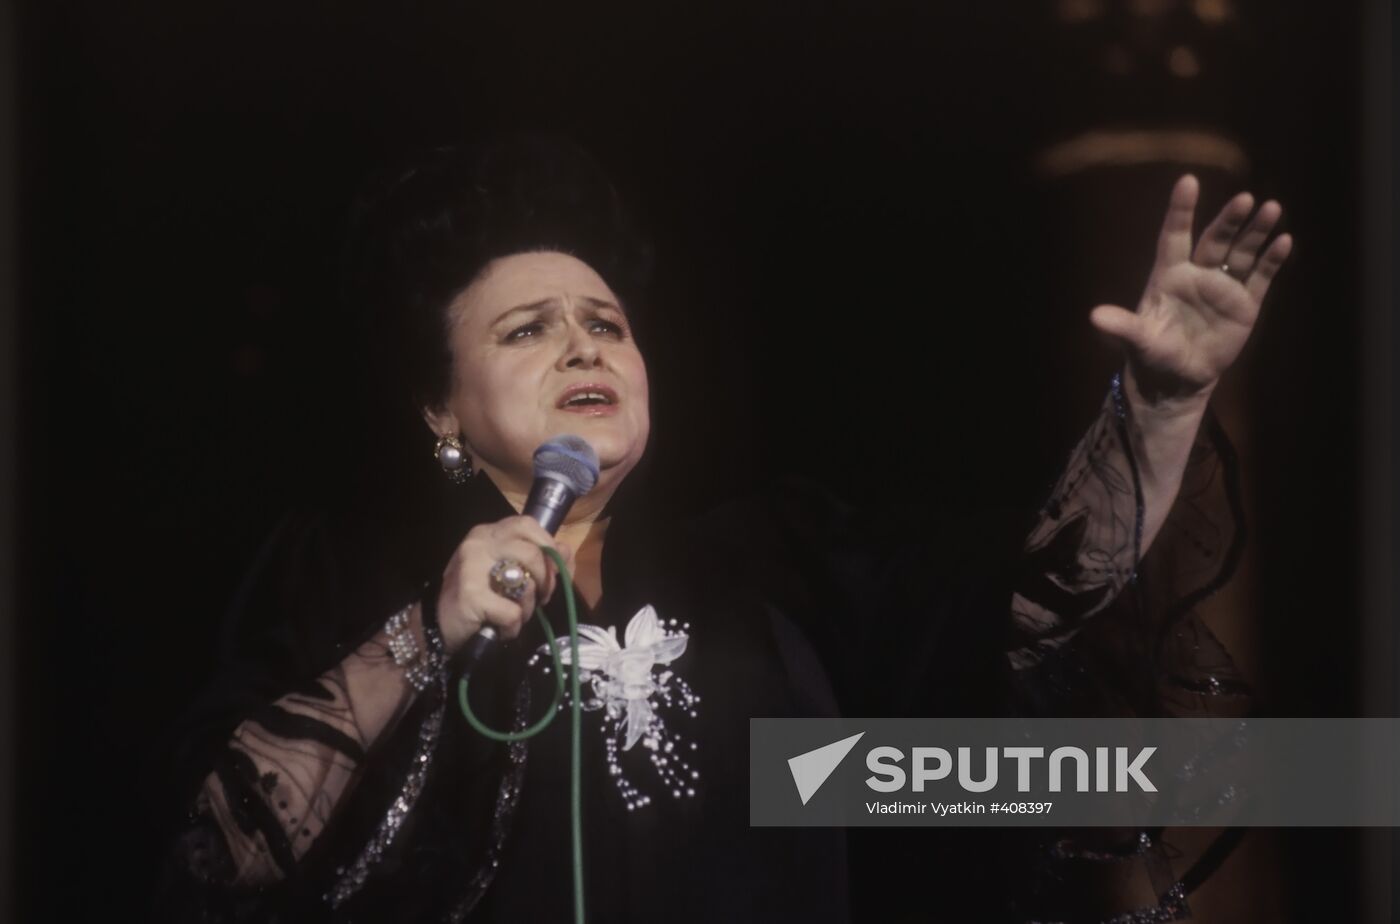 Lyudmila Zykina sings